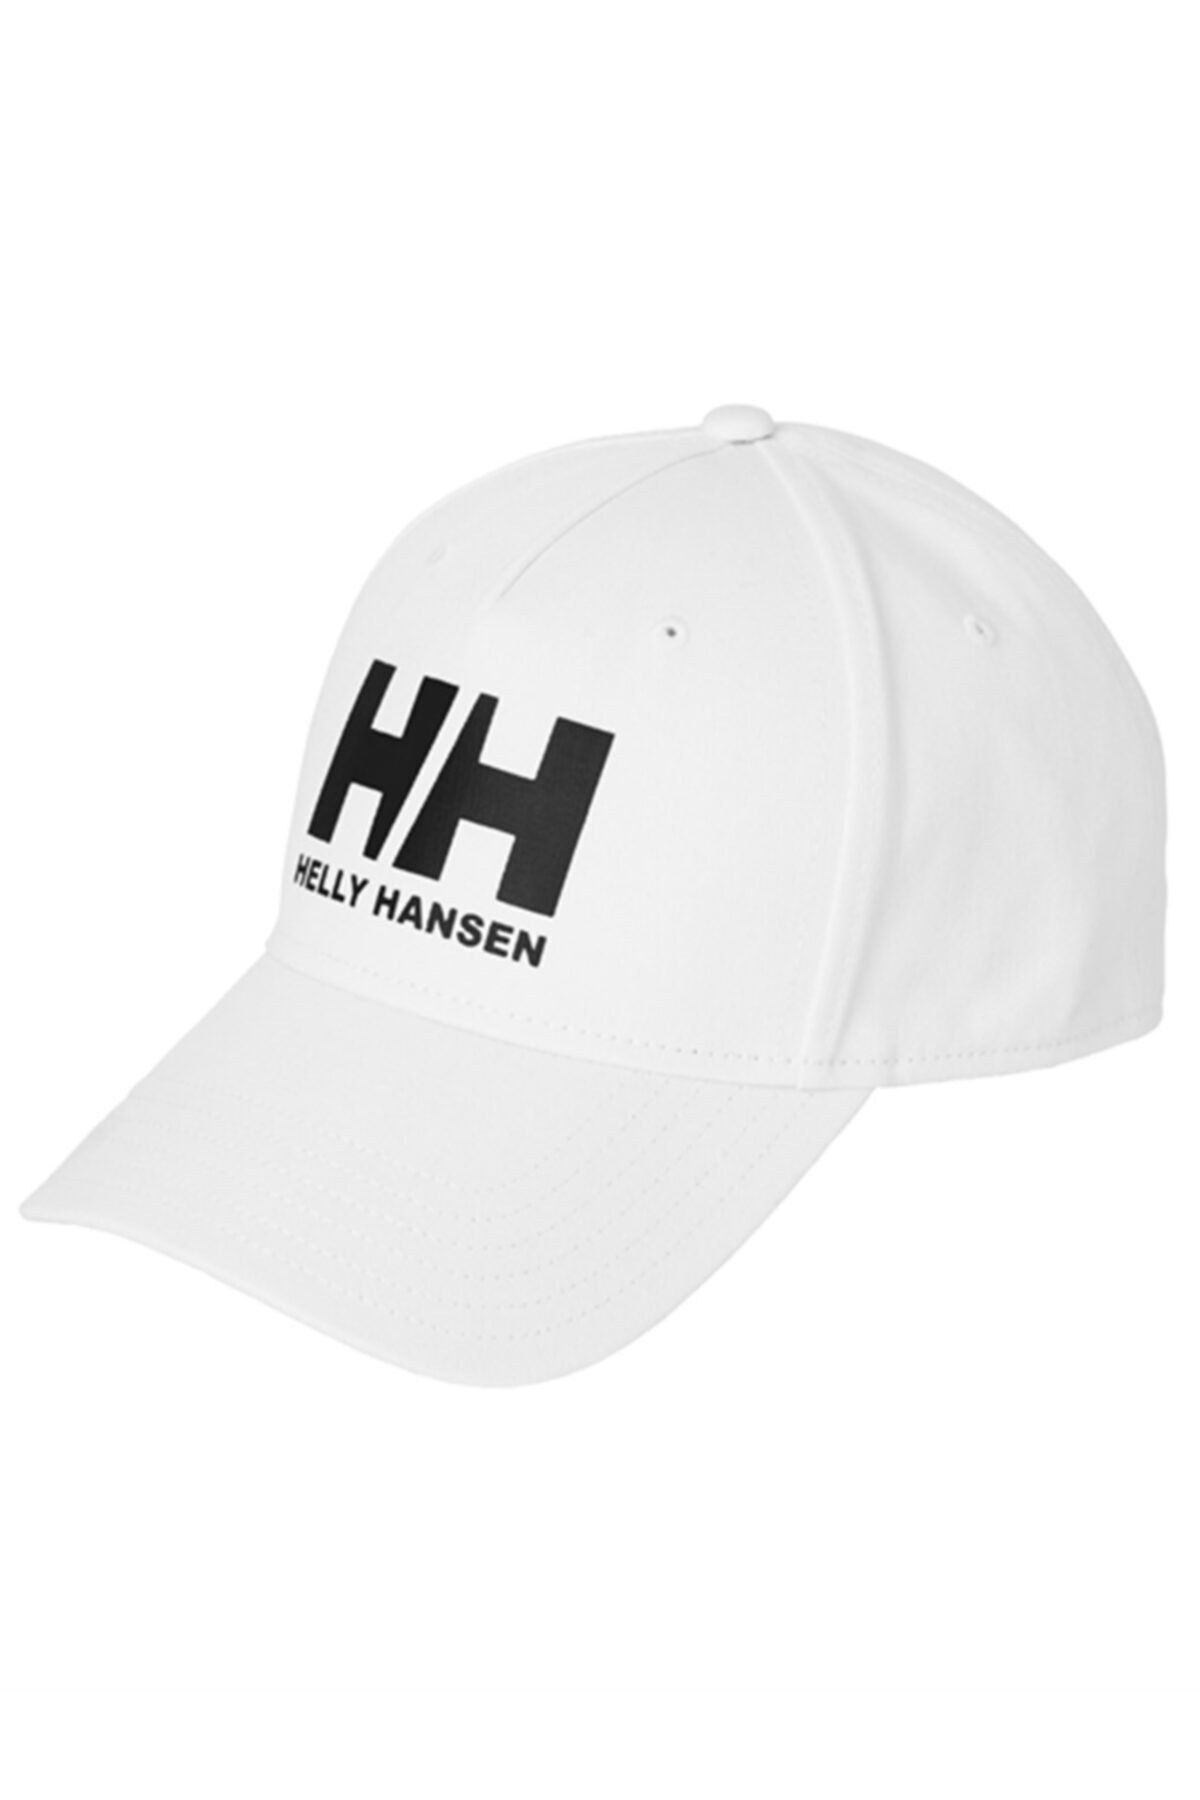 Helly Hansen Hh Ball Cap